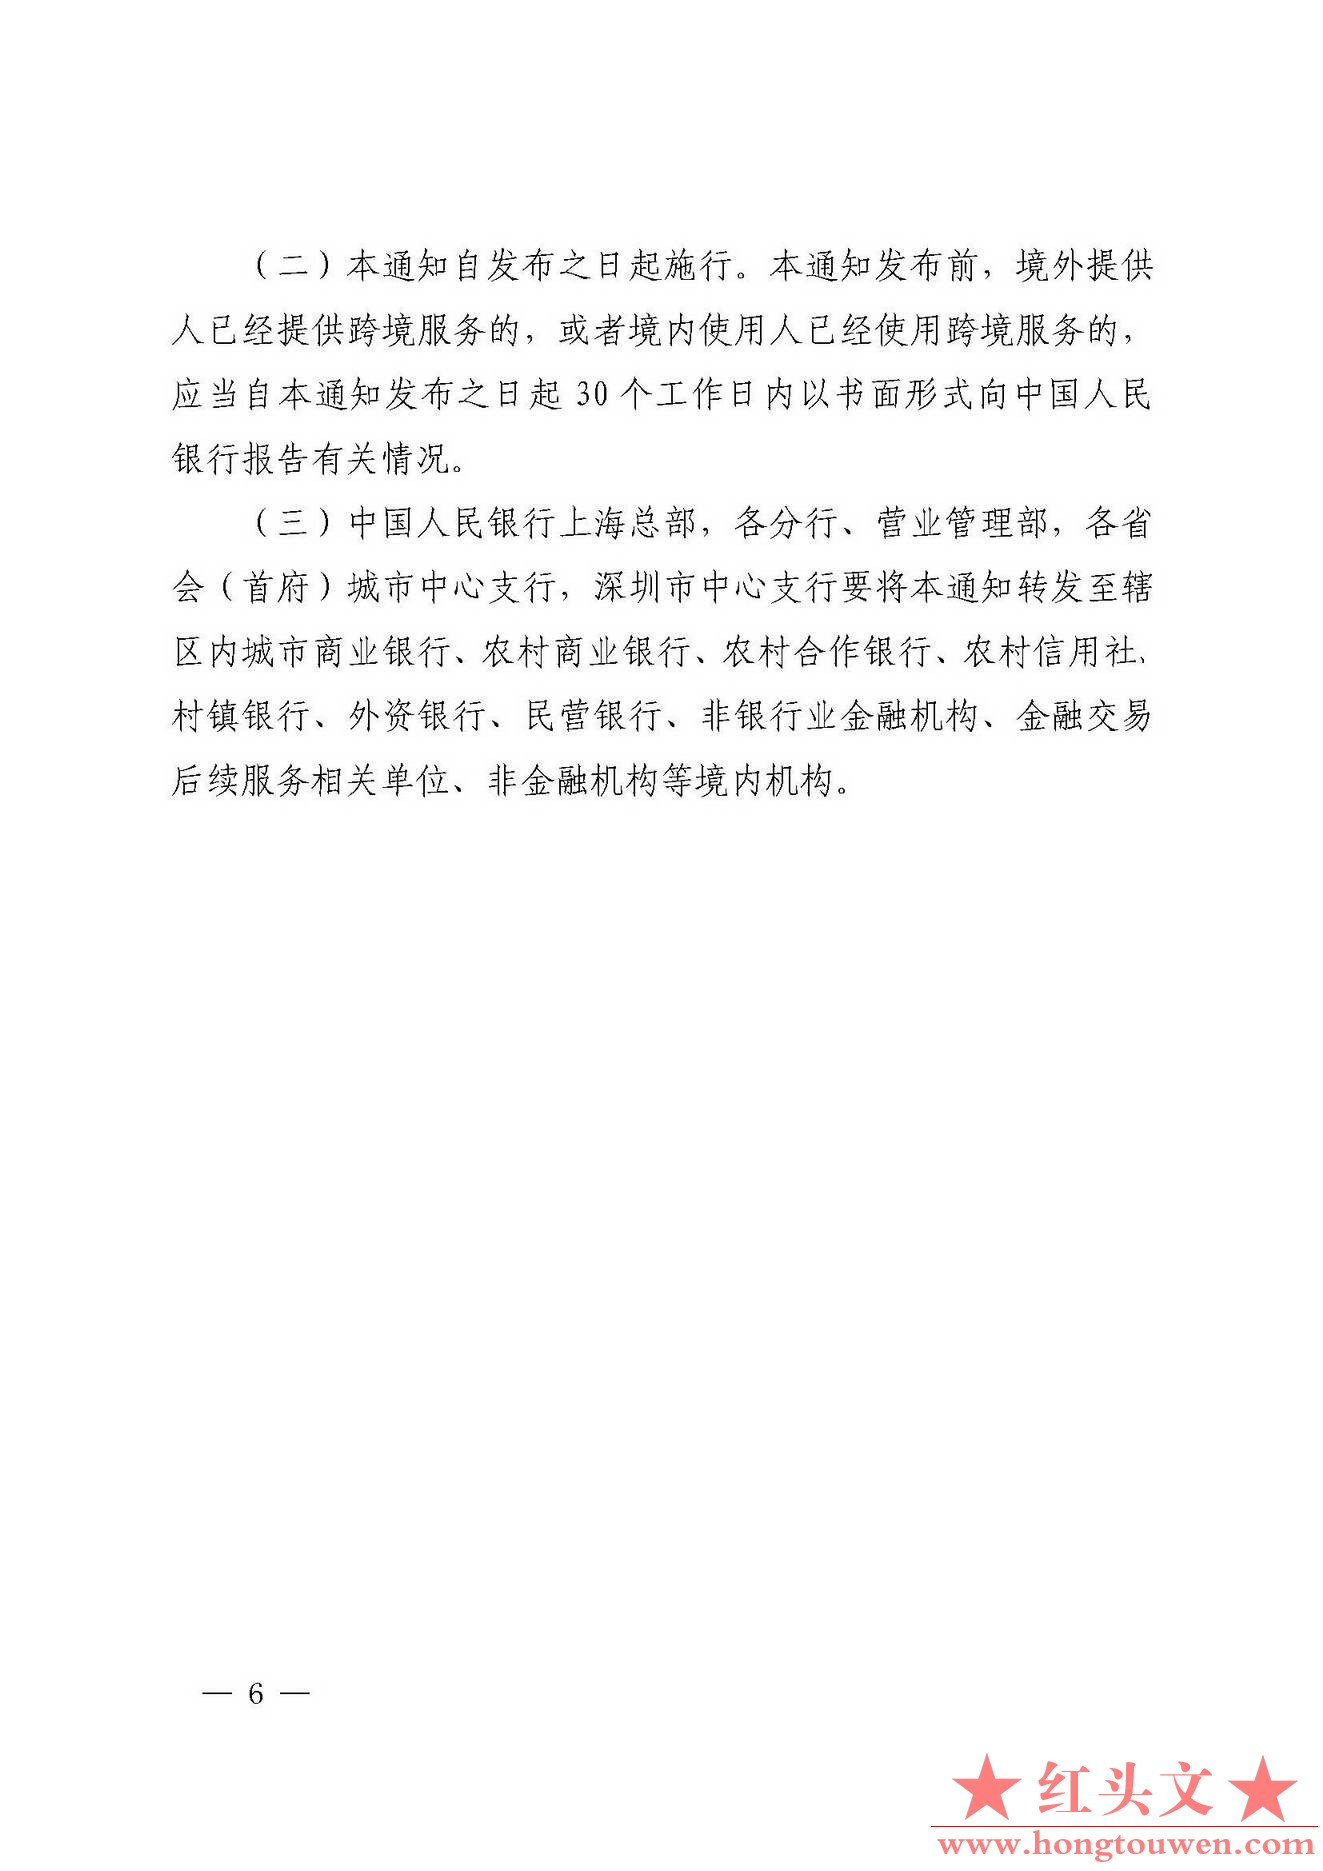 银发[2018]176号-中国人民银行关于加强跨境金融网络与信息服务管理的通知_页面_6.jpg.jpg